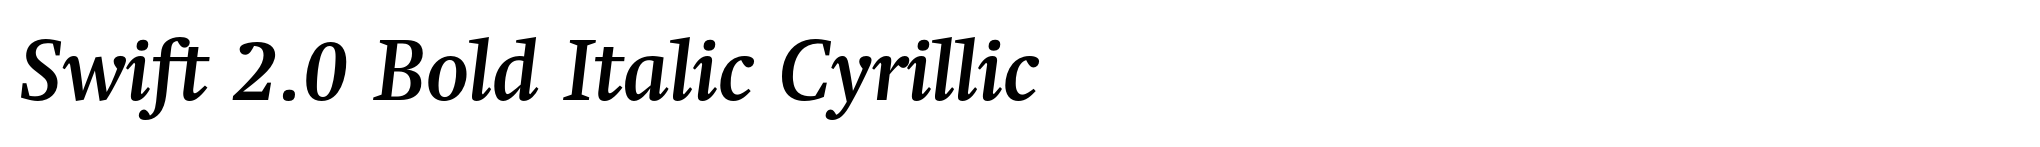 Swift 2.0 Bold Italic Cyrillic image